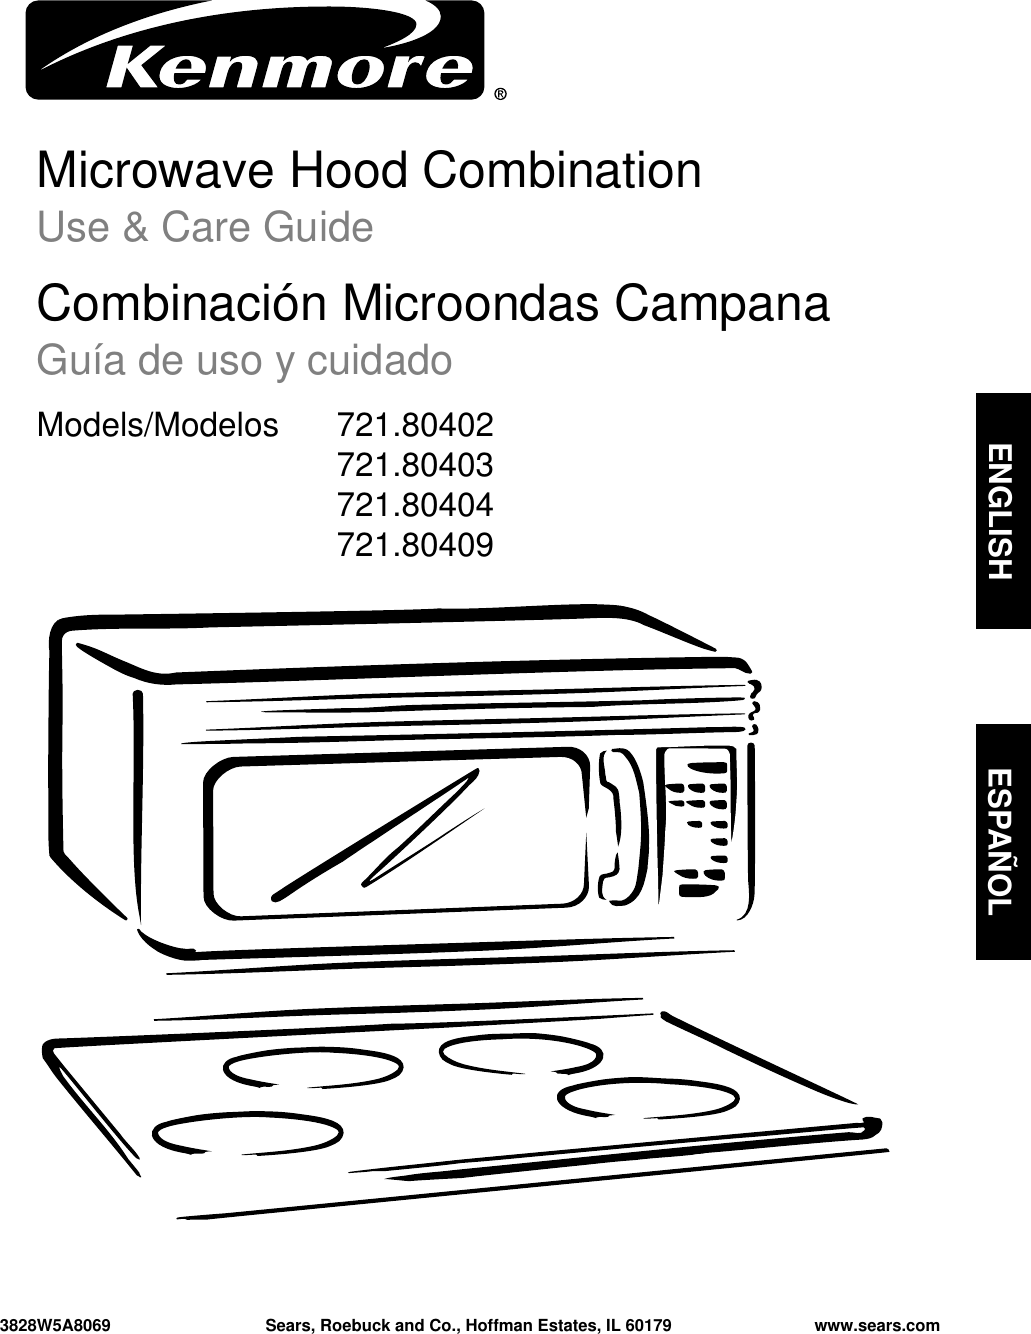 Microwave Hood CombinationUse &amp; Care GuideCombinación Microondas CampanaGuía de uso y cuidadoModels/Modelos  721.80402721.80403 721.80404721.804093828W5A8069 Sears, Roebuck and Co., Hoffman Estates, IL 60179 www.sears.comENGLISH ESPAÑOL